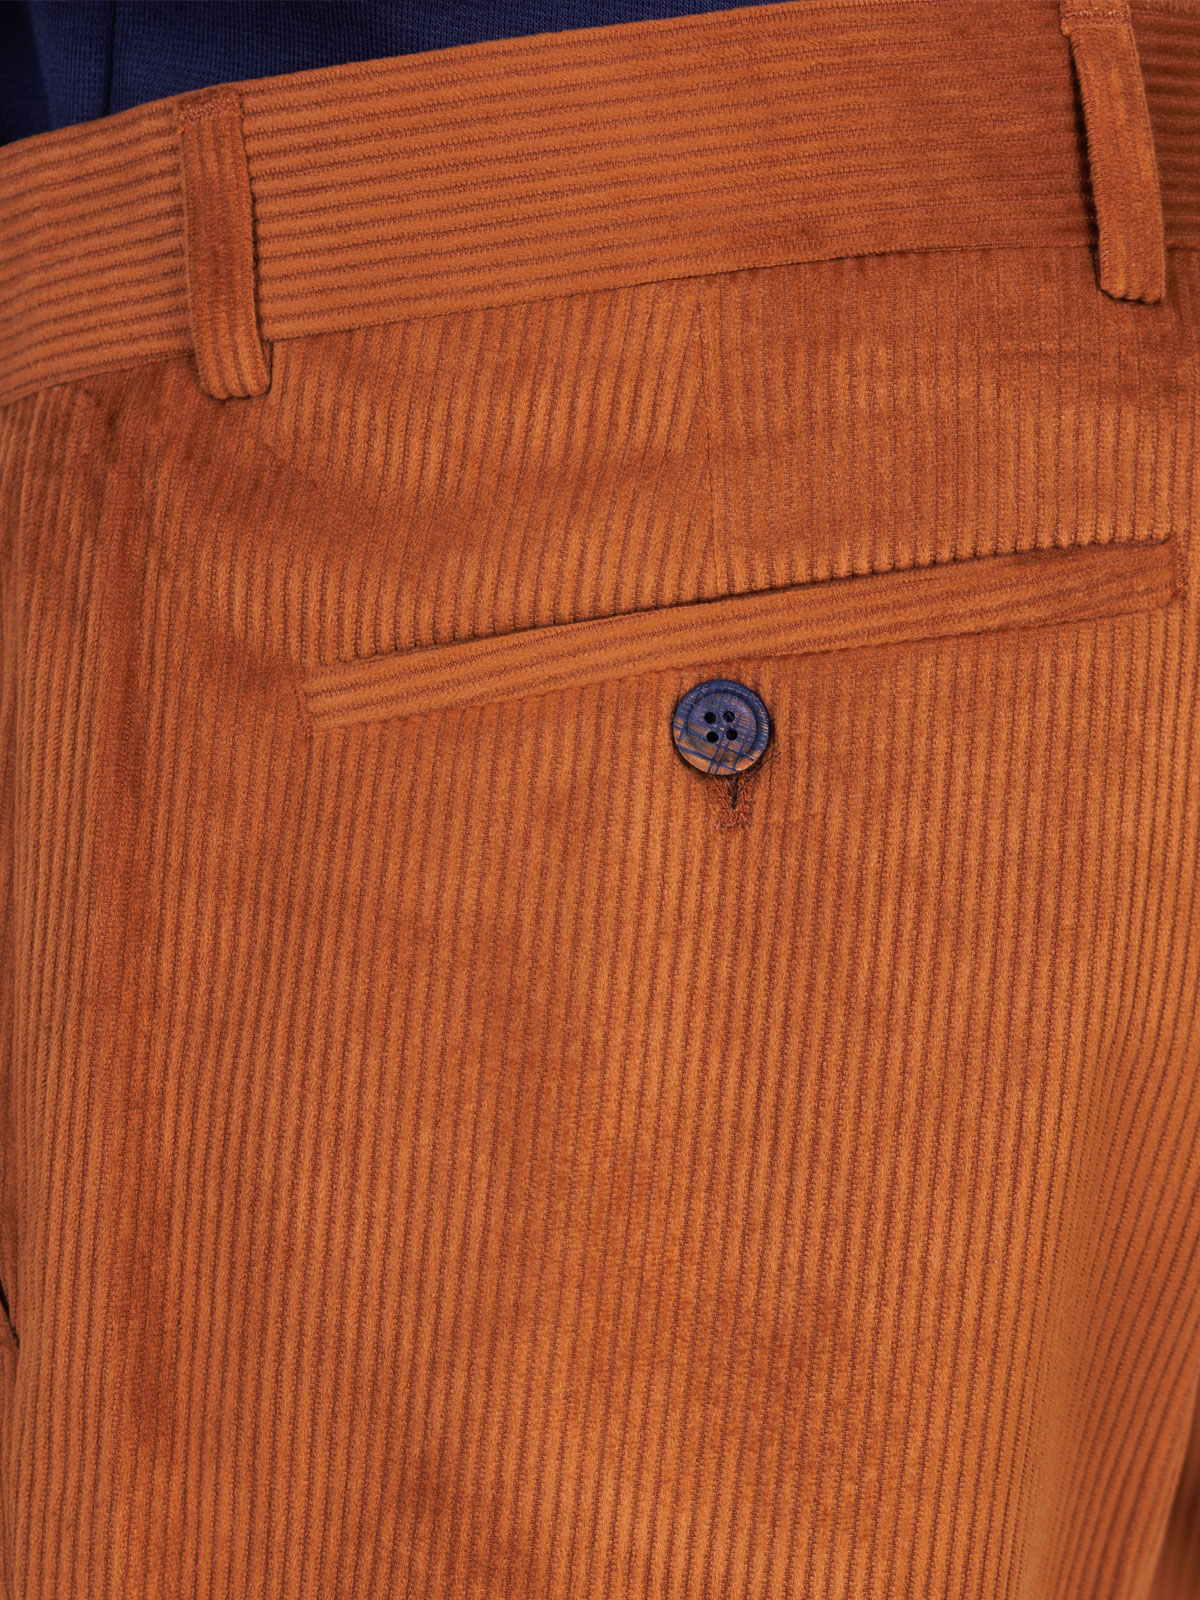 Ανδρικό παντελόνι σε μουσταρδί χρώμα - 60299 € 44.43 img3